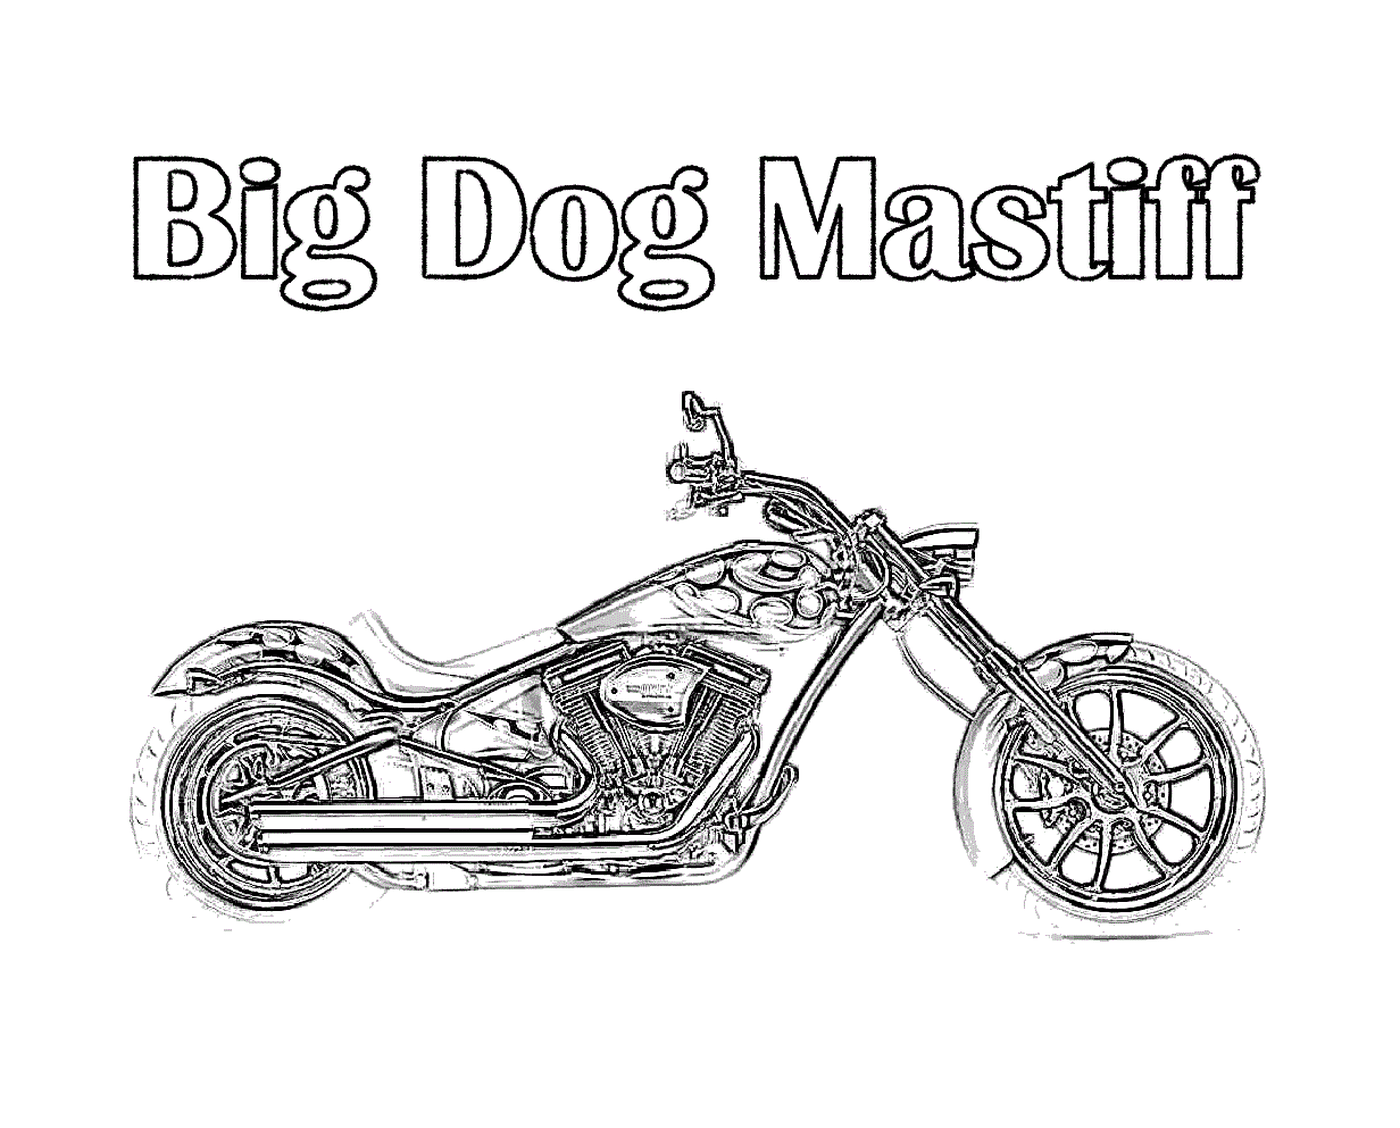  Big dog on motorcycle 